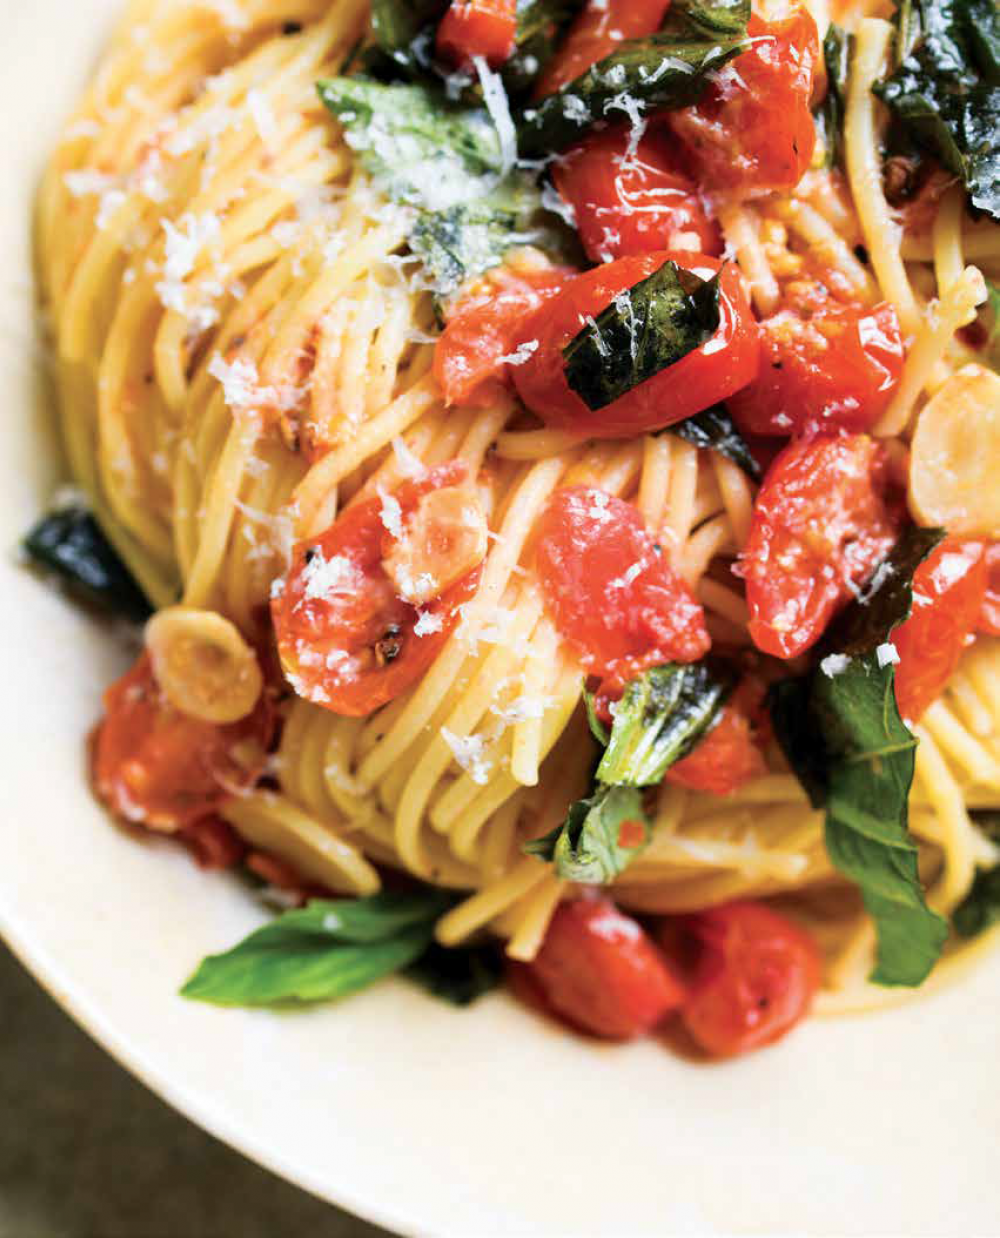 Spaghetti aglio